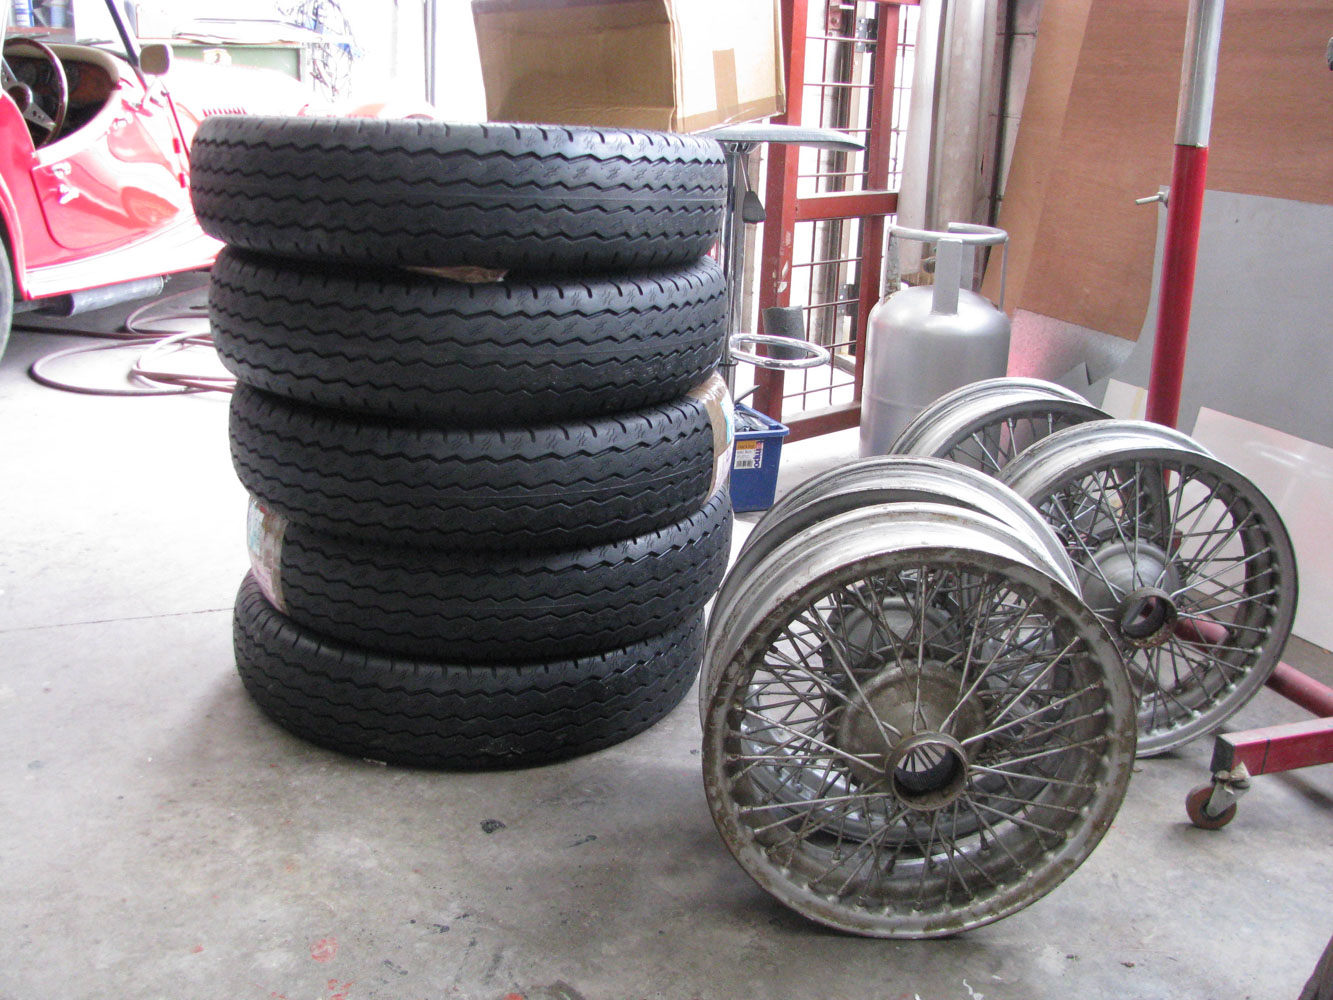 Tyres (Avons) arrive at Derek's-21.05.13.jpg